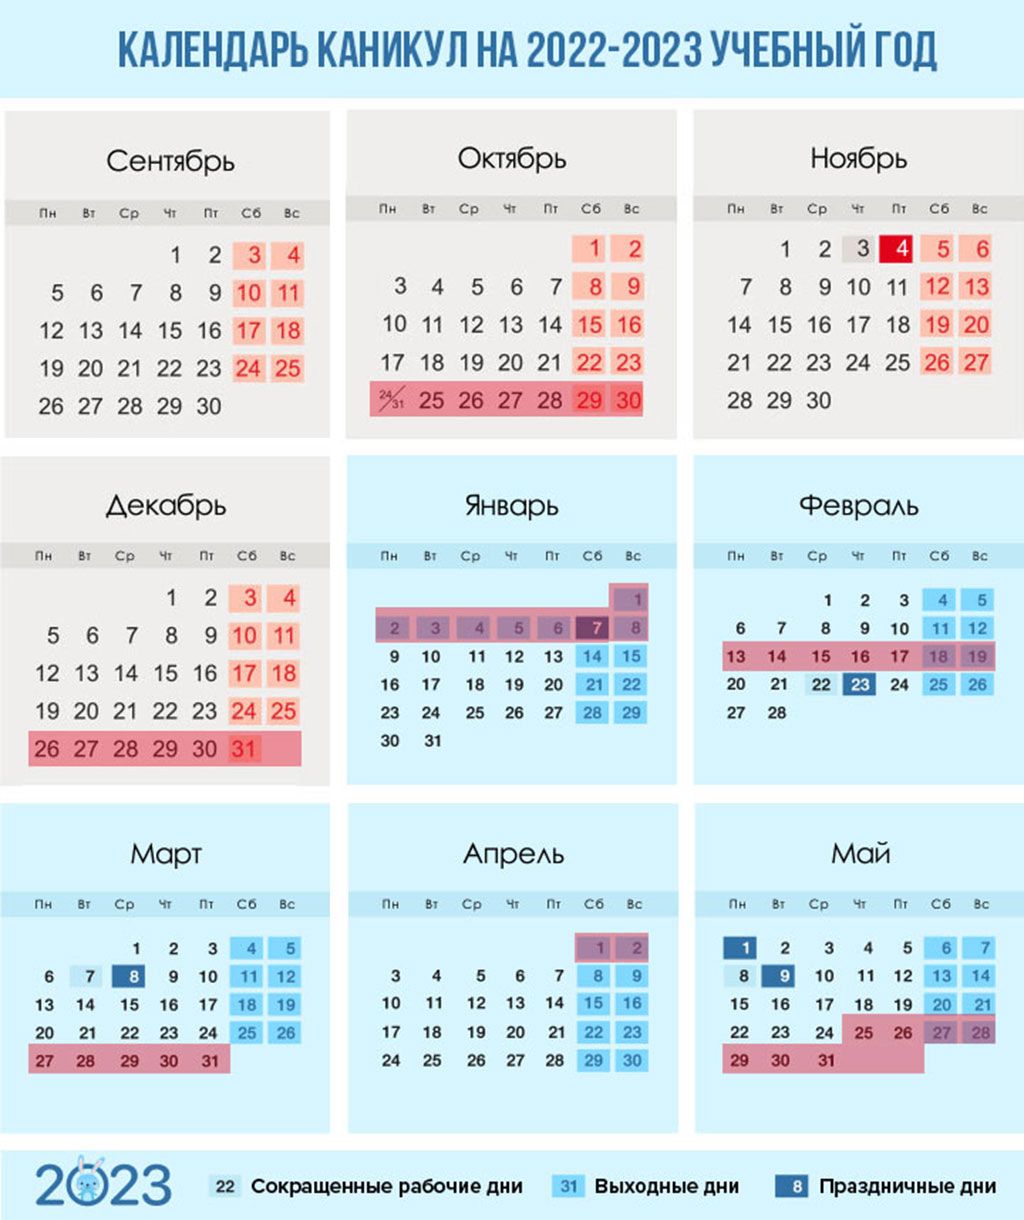 Календарь каникул 2022-2023